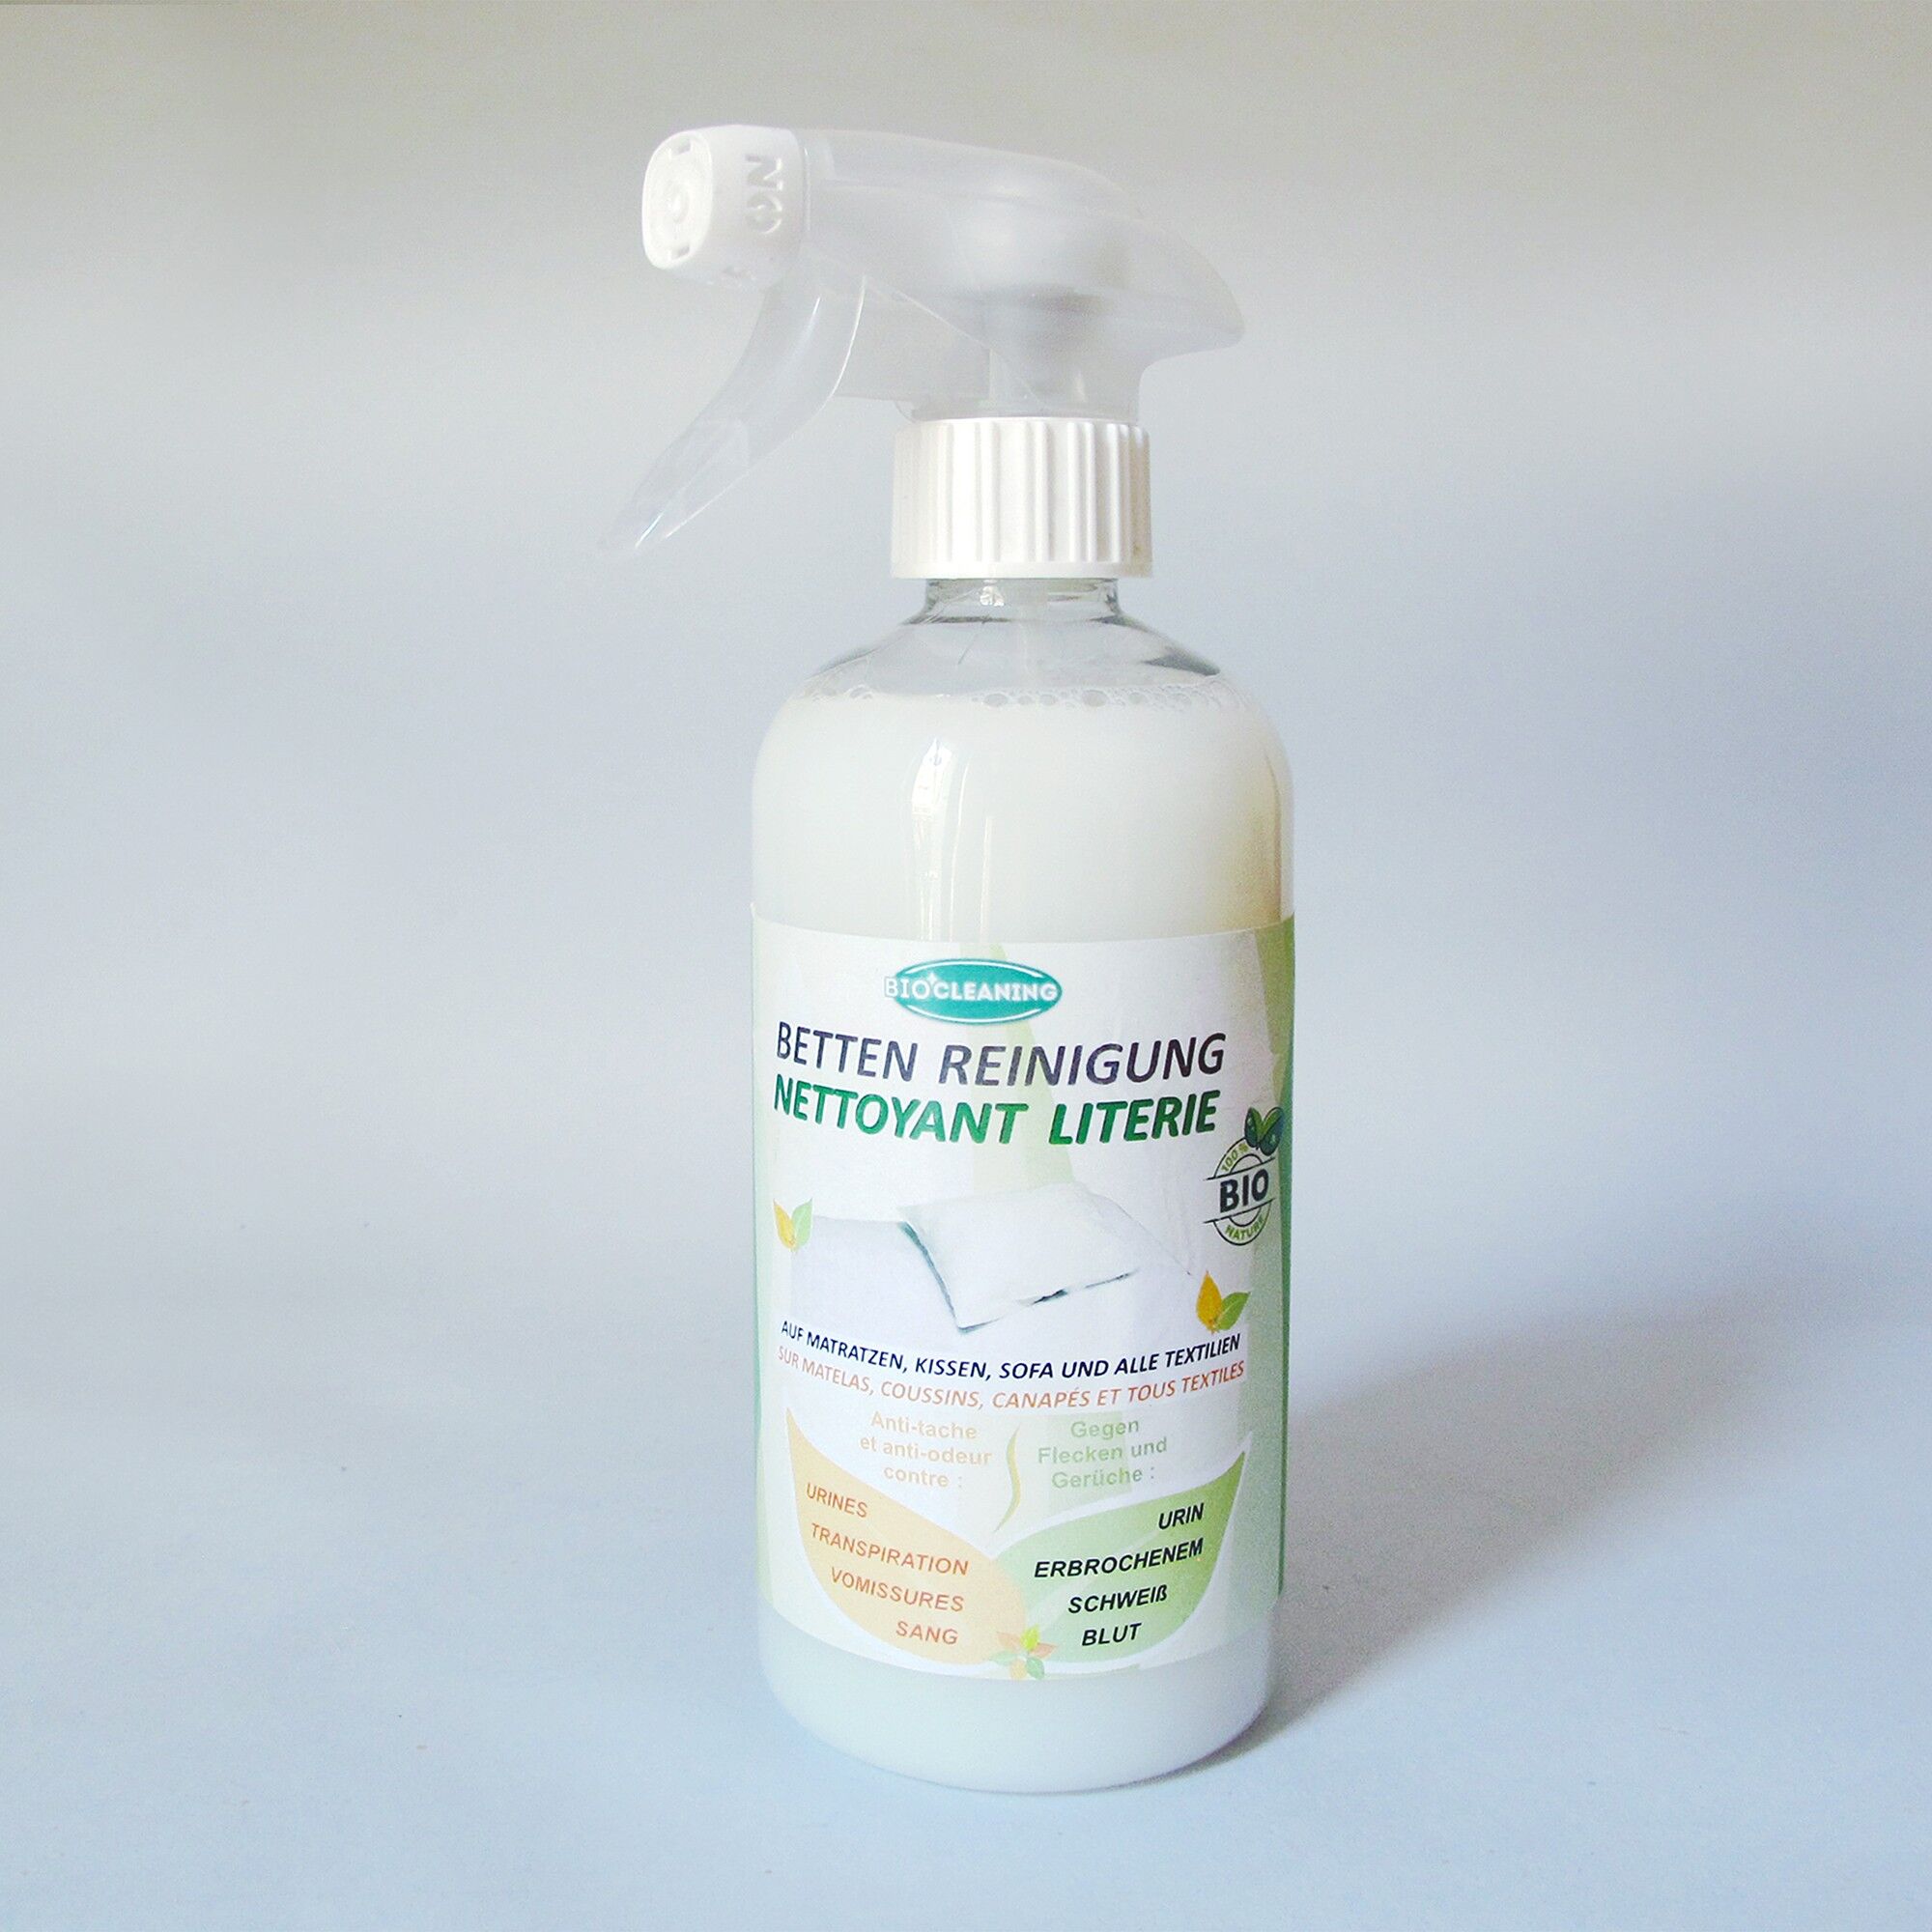 Spray nettoyant literie BioCleaning - Blancheporte Blanc Unité : 500ml